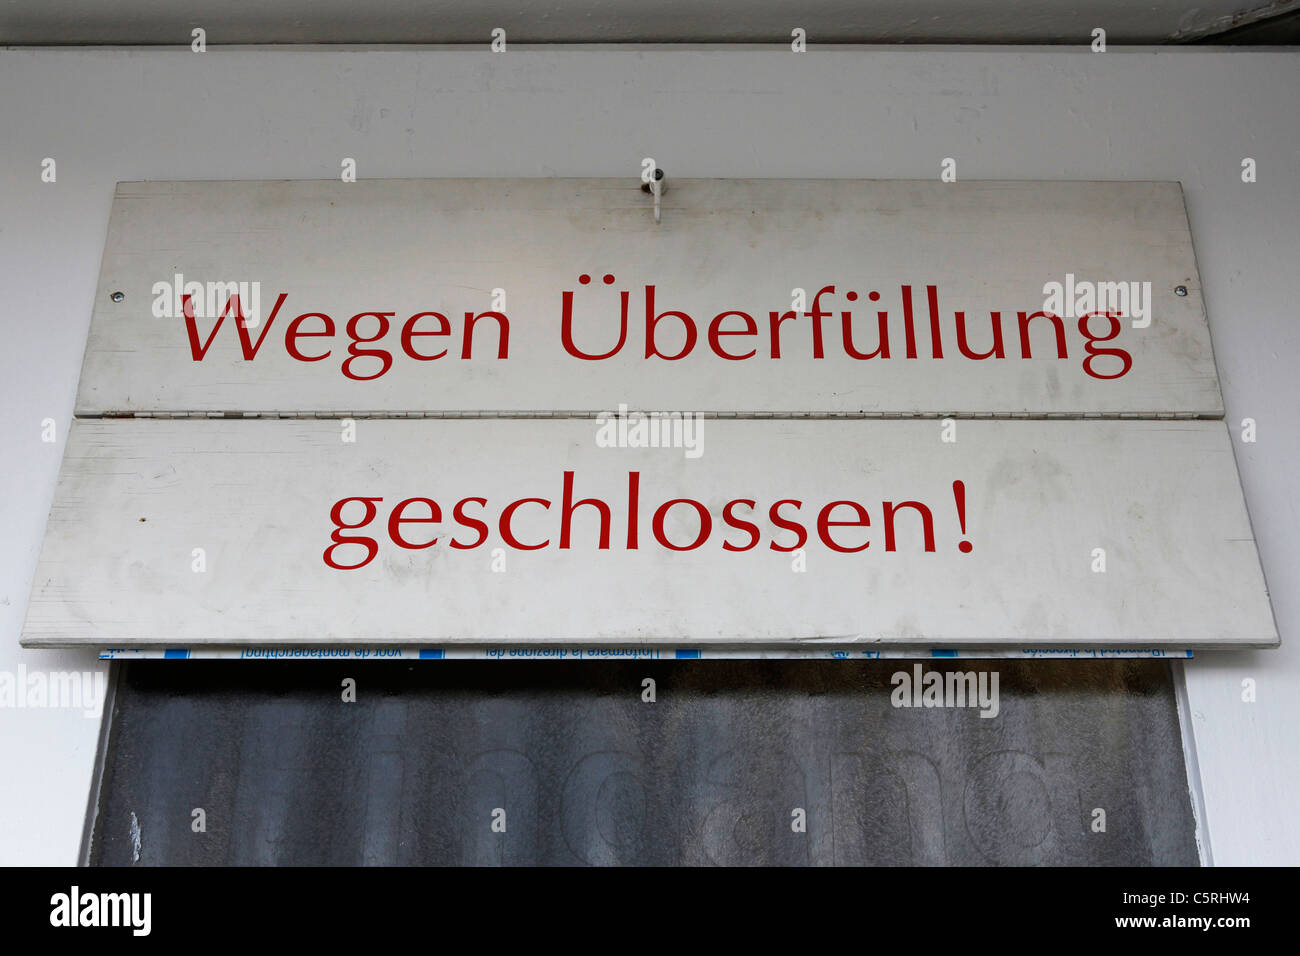 A sign states 'Wegen Ueberfuellung geschlossen' at the Munich Oktoberfest. Stock Photo